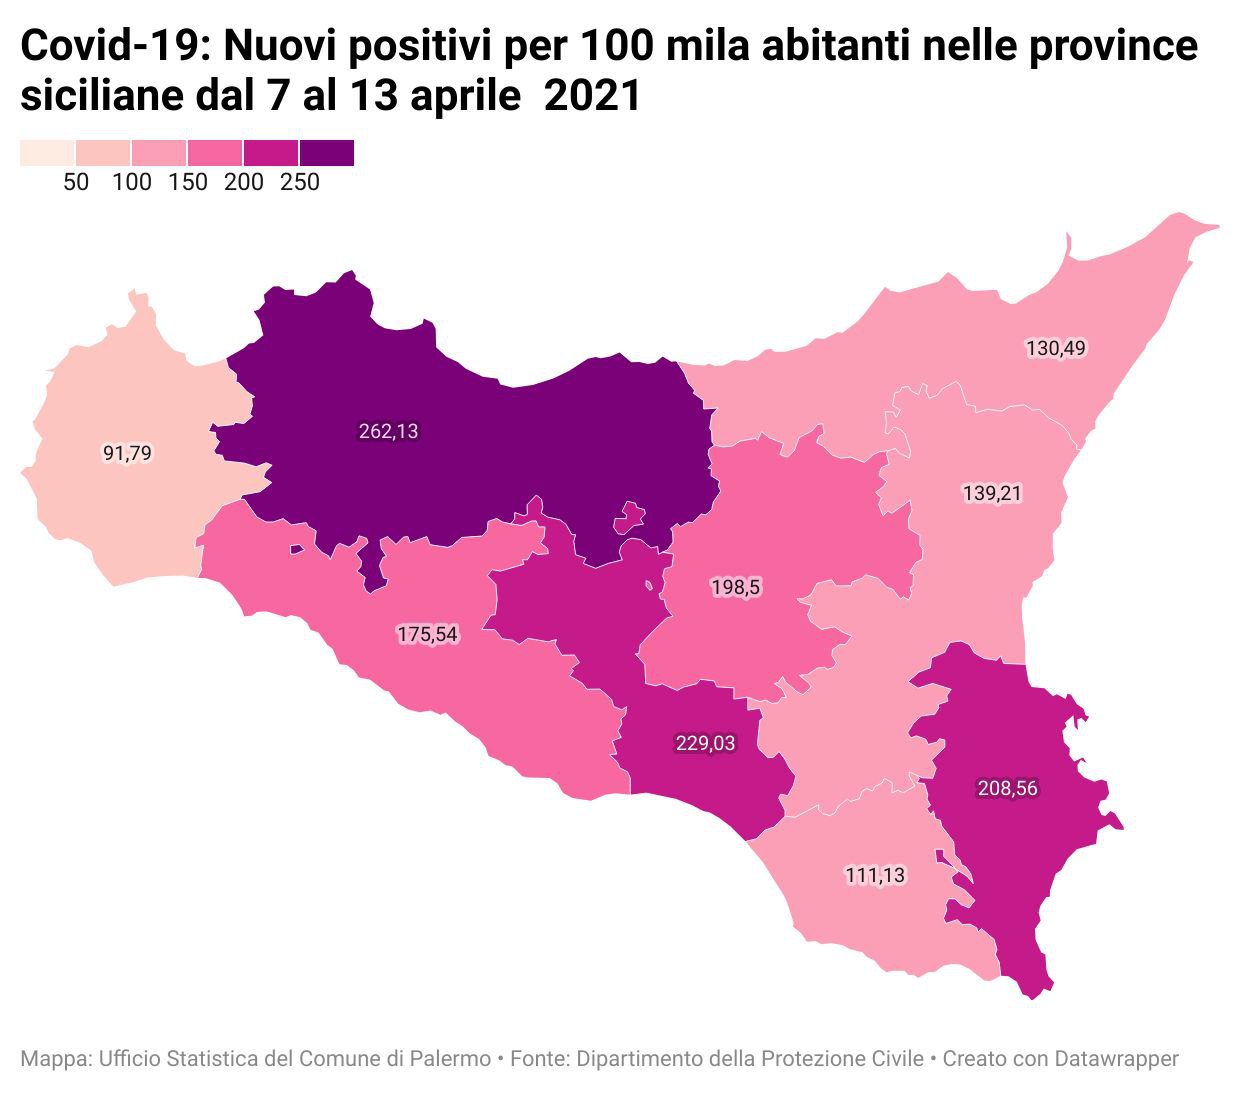 Nuovi positivi per 100 mila abitanti nelle province siciliane dal 7 al 13 aprile 2021